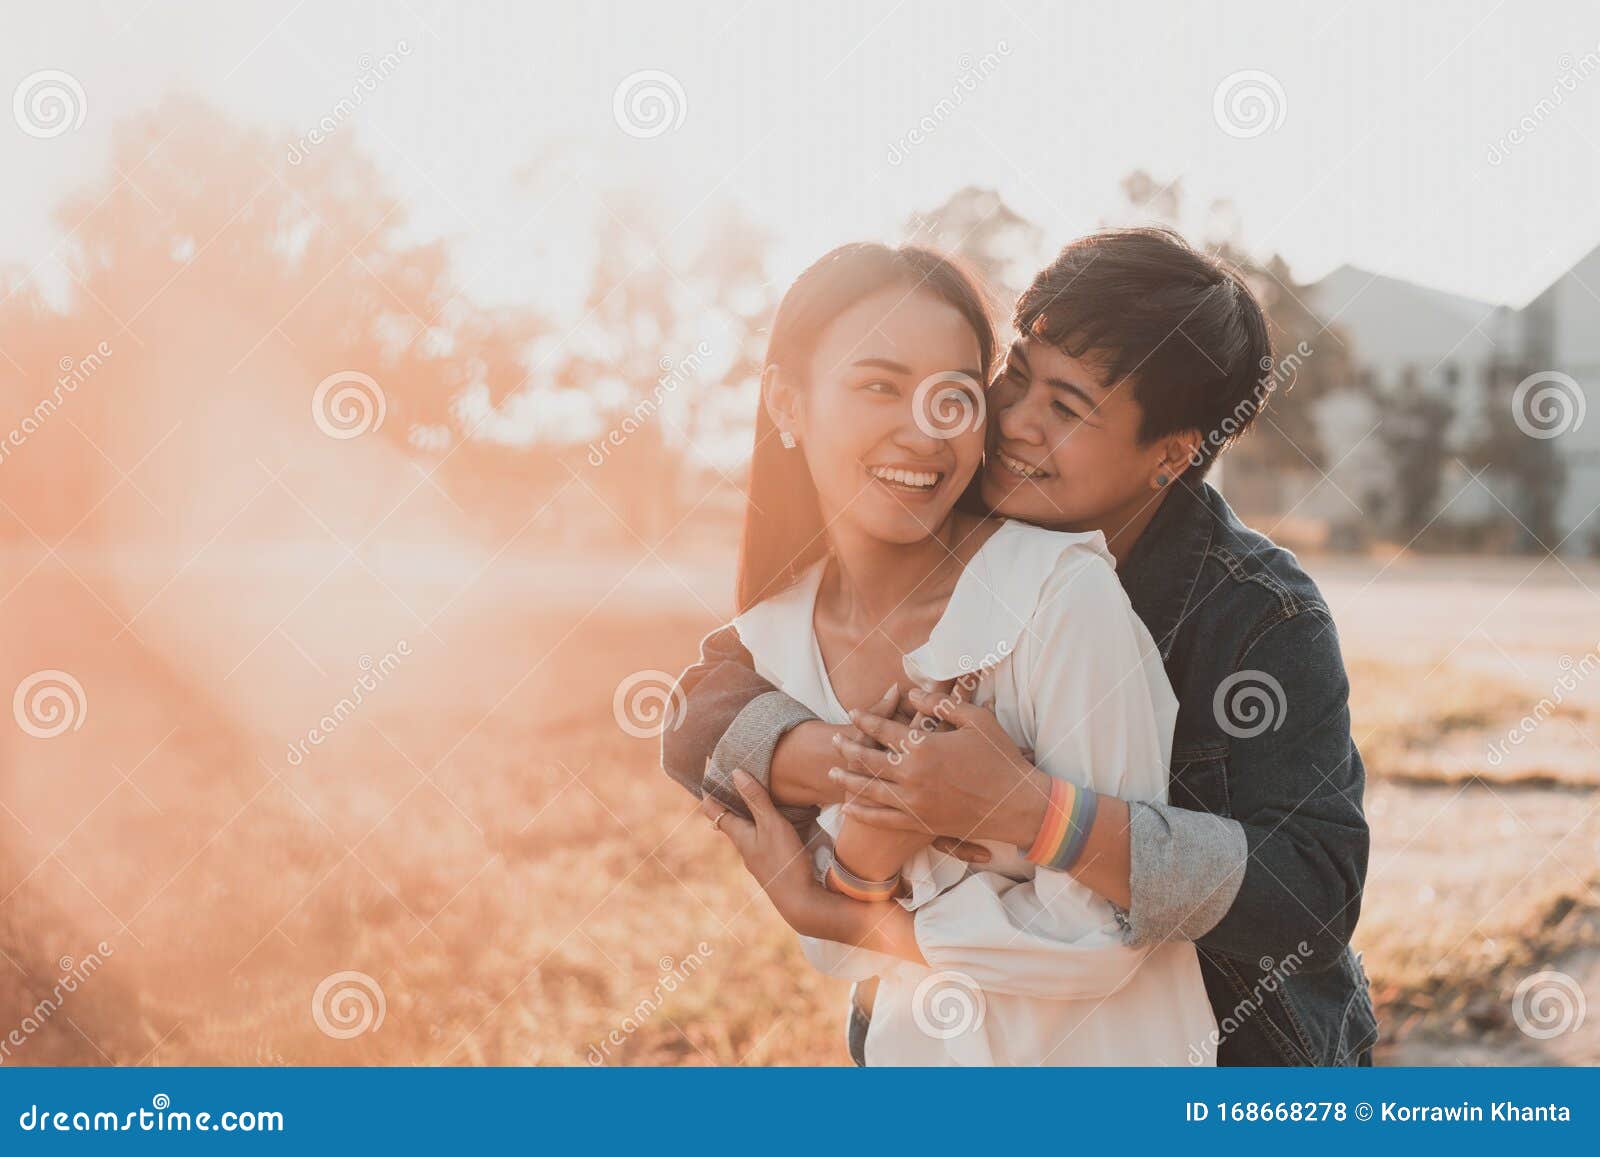 年轻同性恋者快乐夫妇在白色背景彼此相爱 库存图片. 图片 包括有 男人, 背包, 同性恋, 白种人, 墨西哥 - 130464499